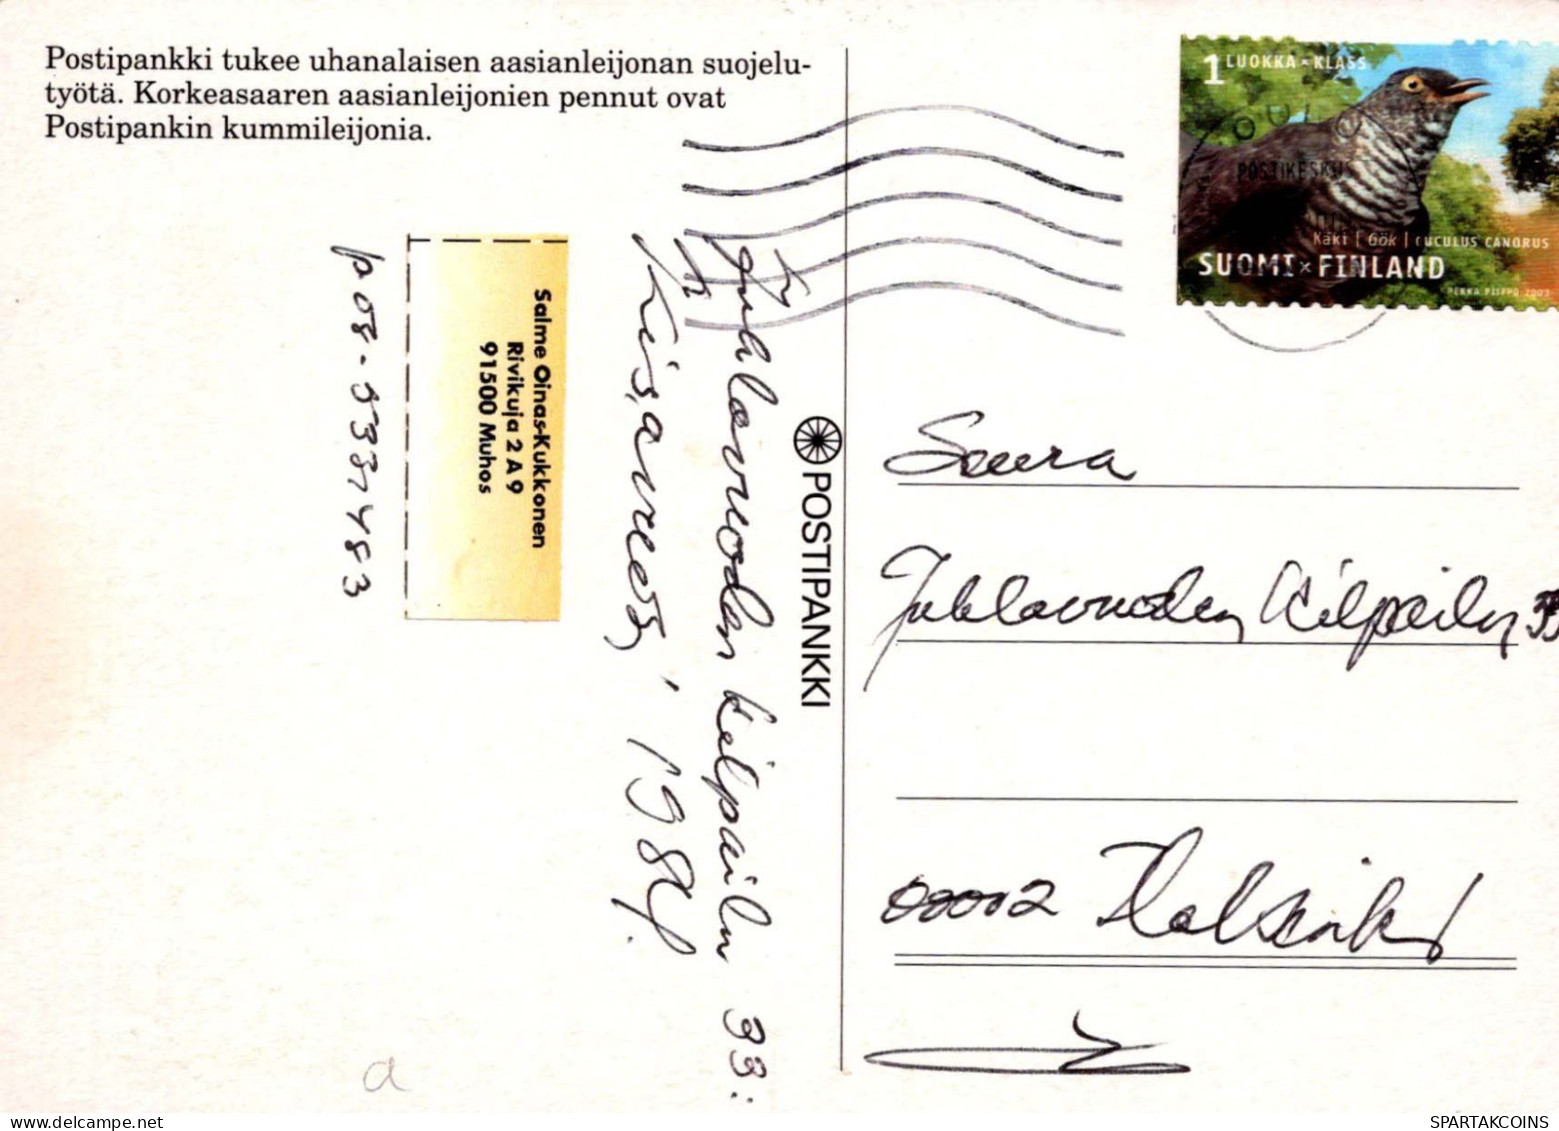 LION Animaux Vintage Carte Postale CPSM #PBS046.FR - Löwen